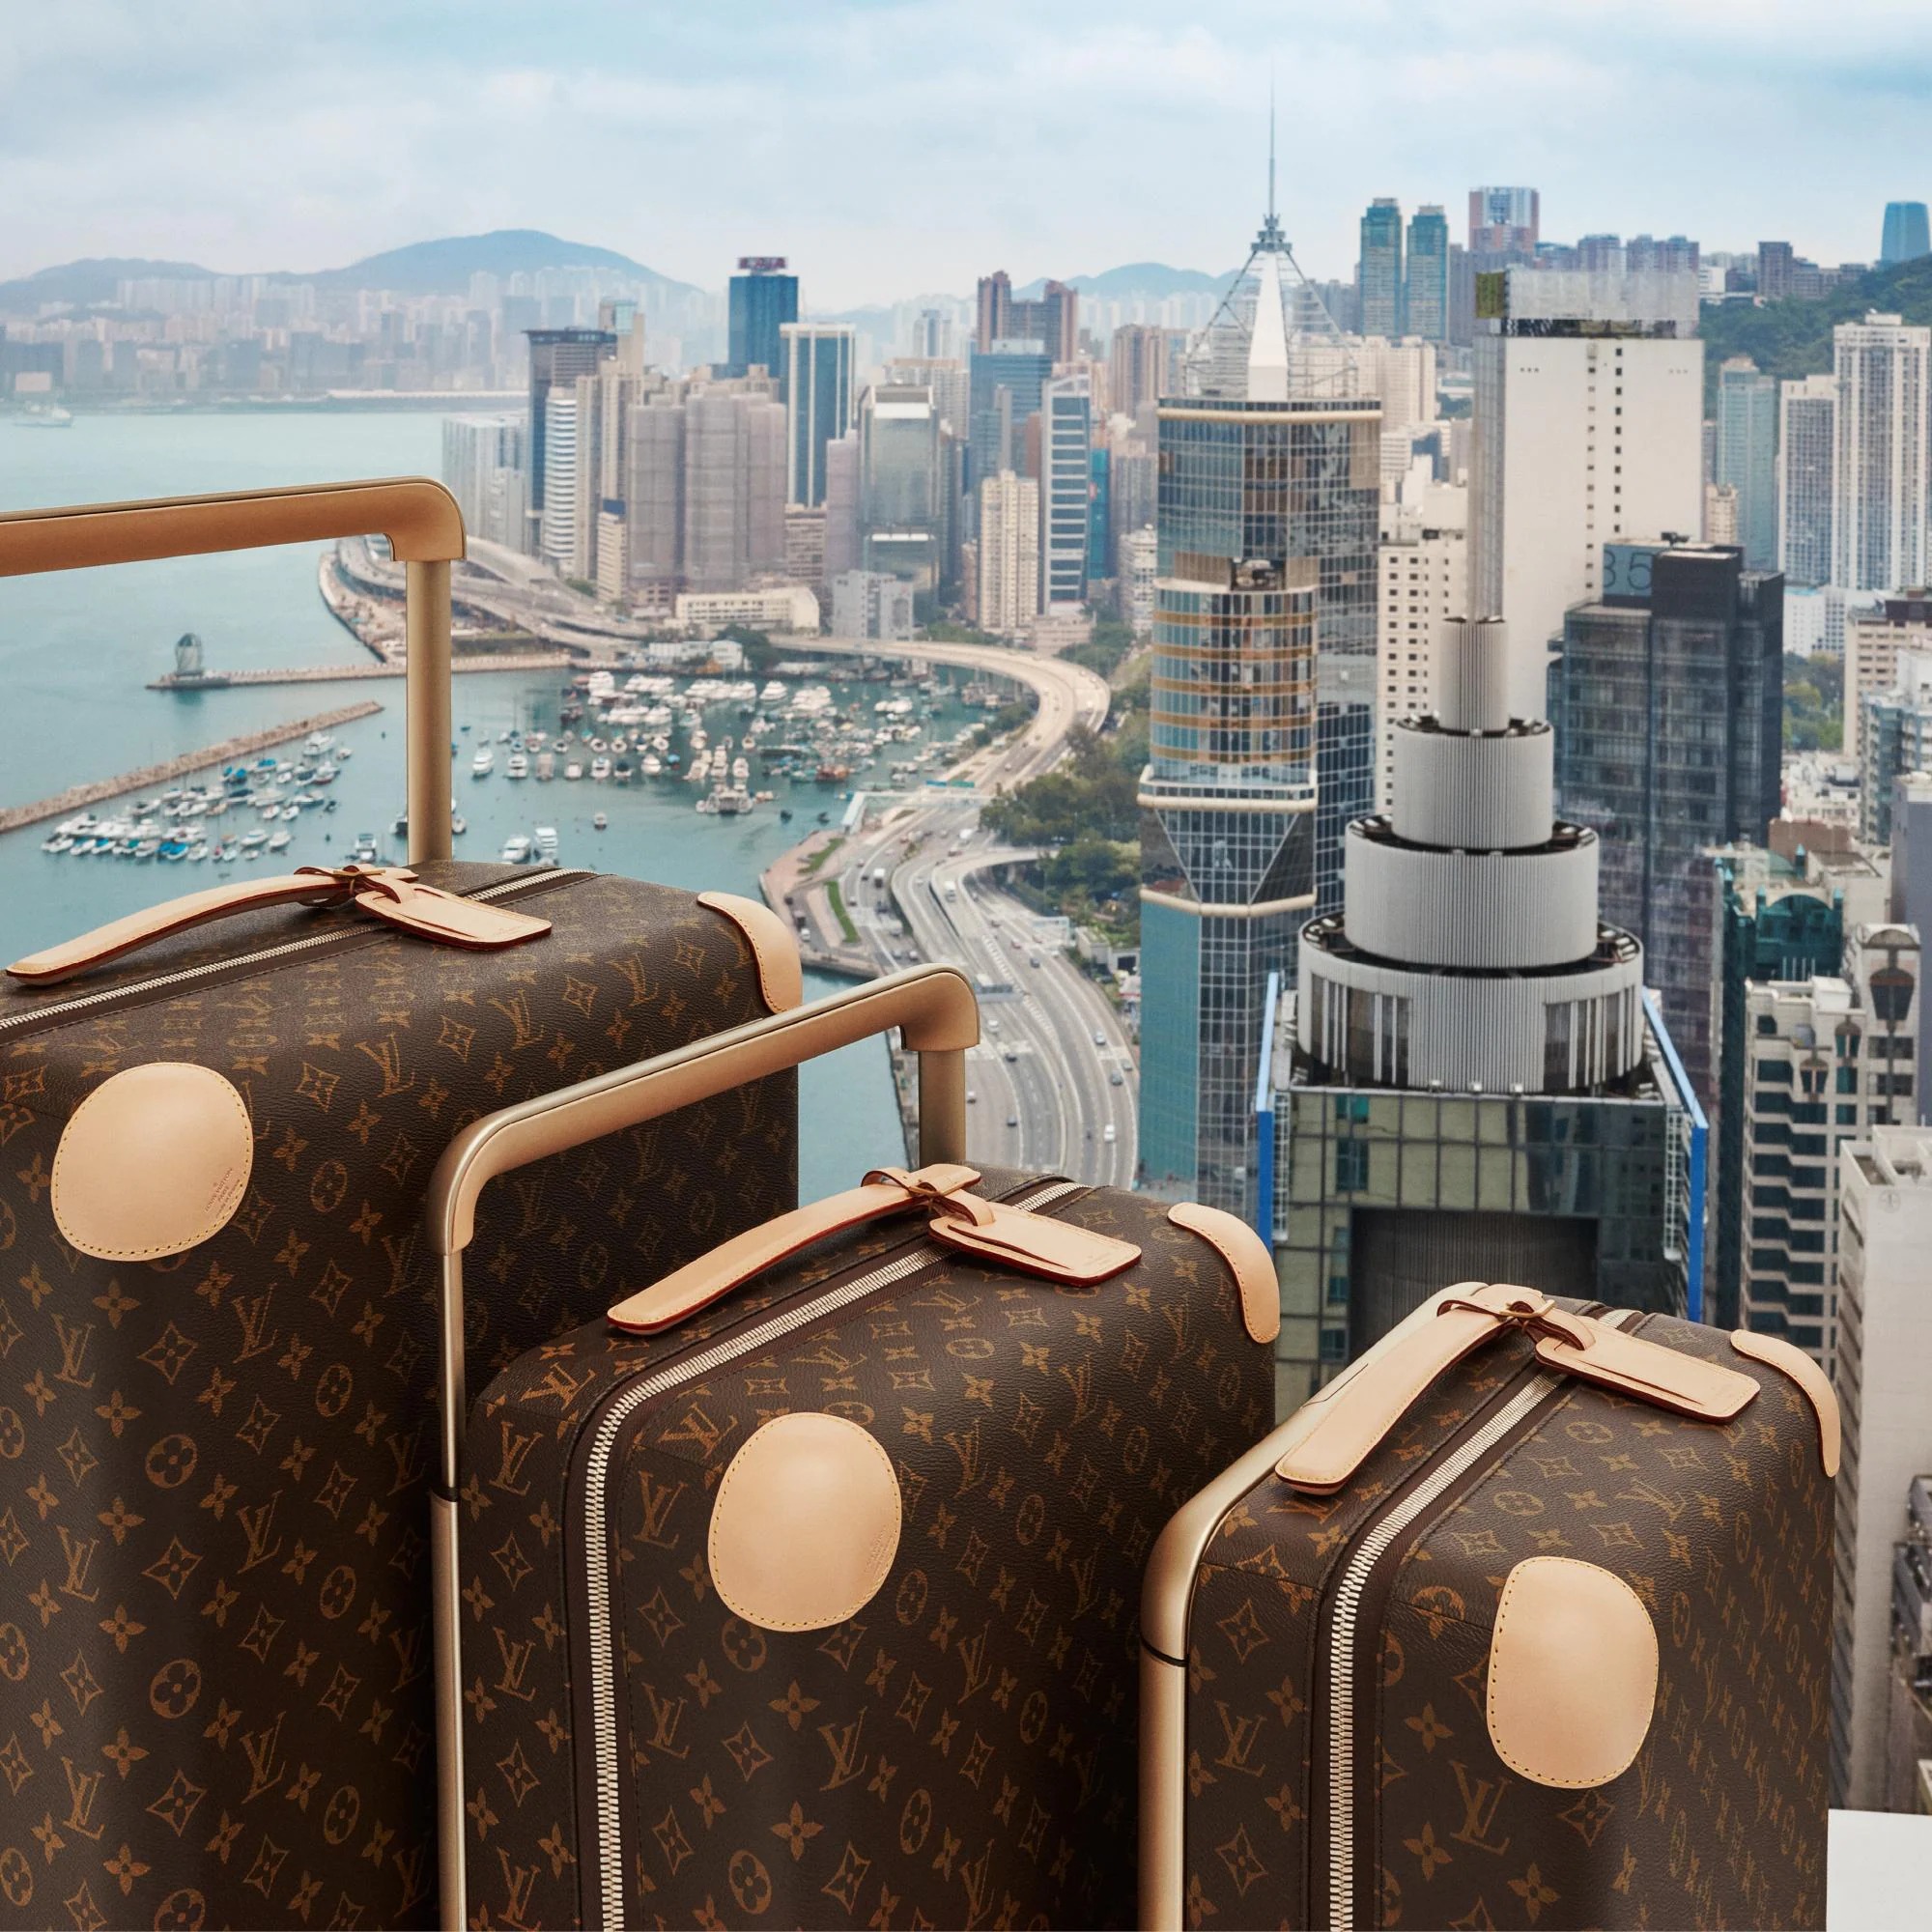 Louis Vuitton: Una nueva maleta para tus viajes